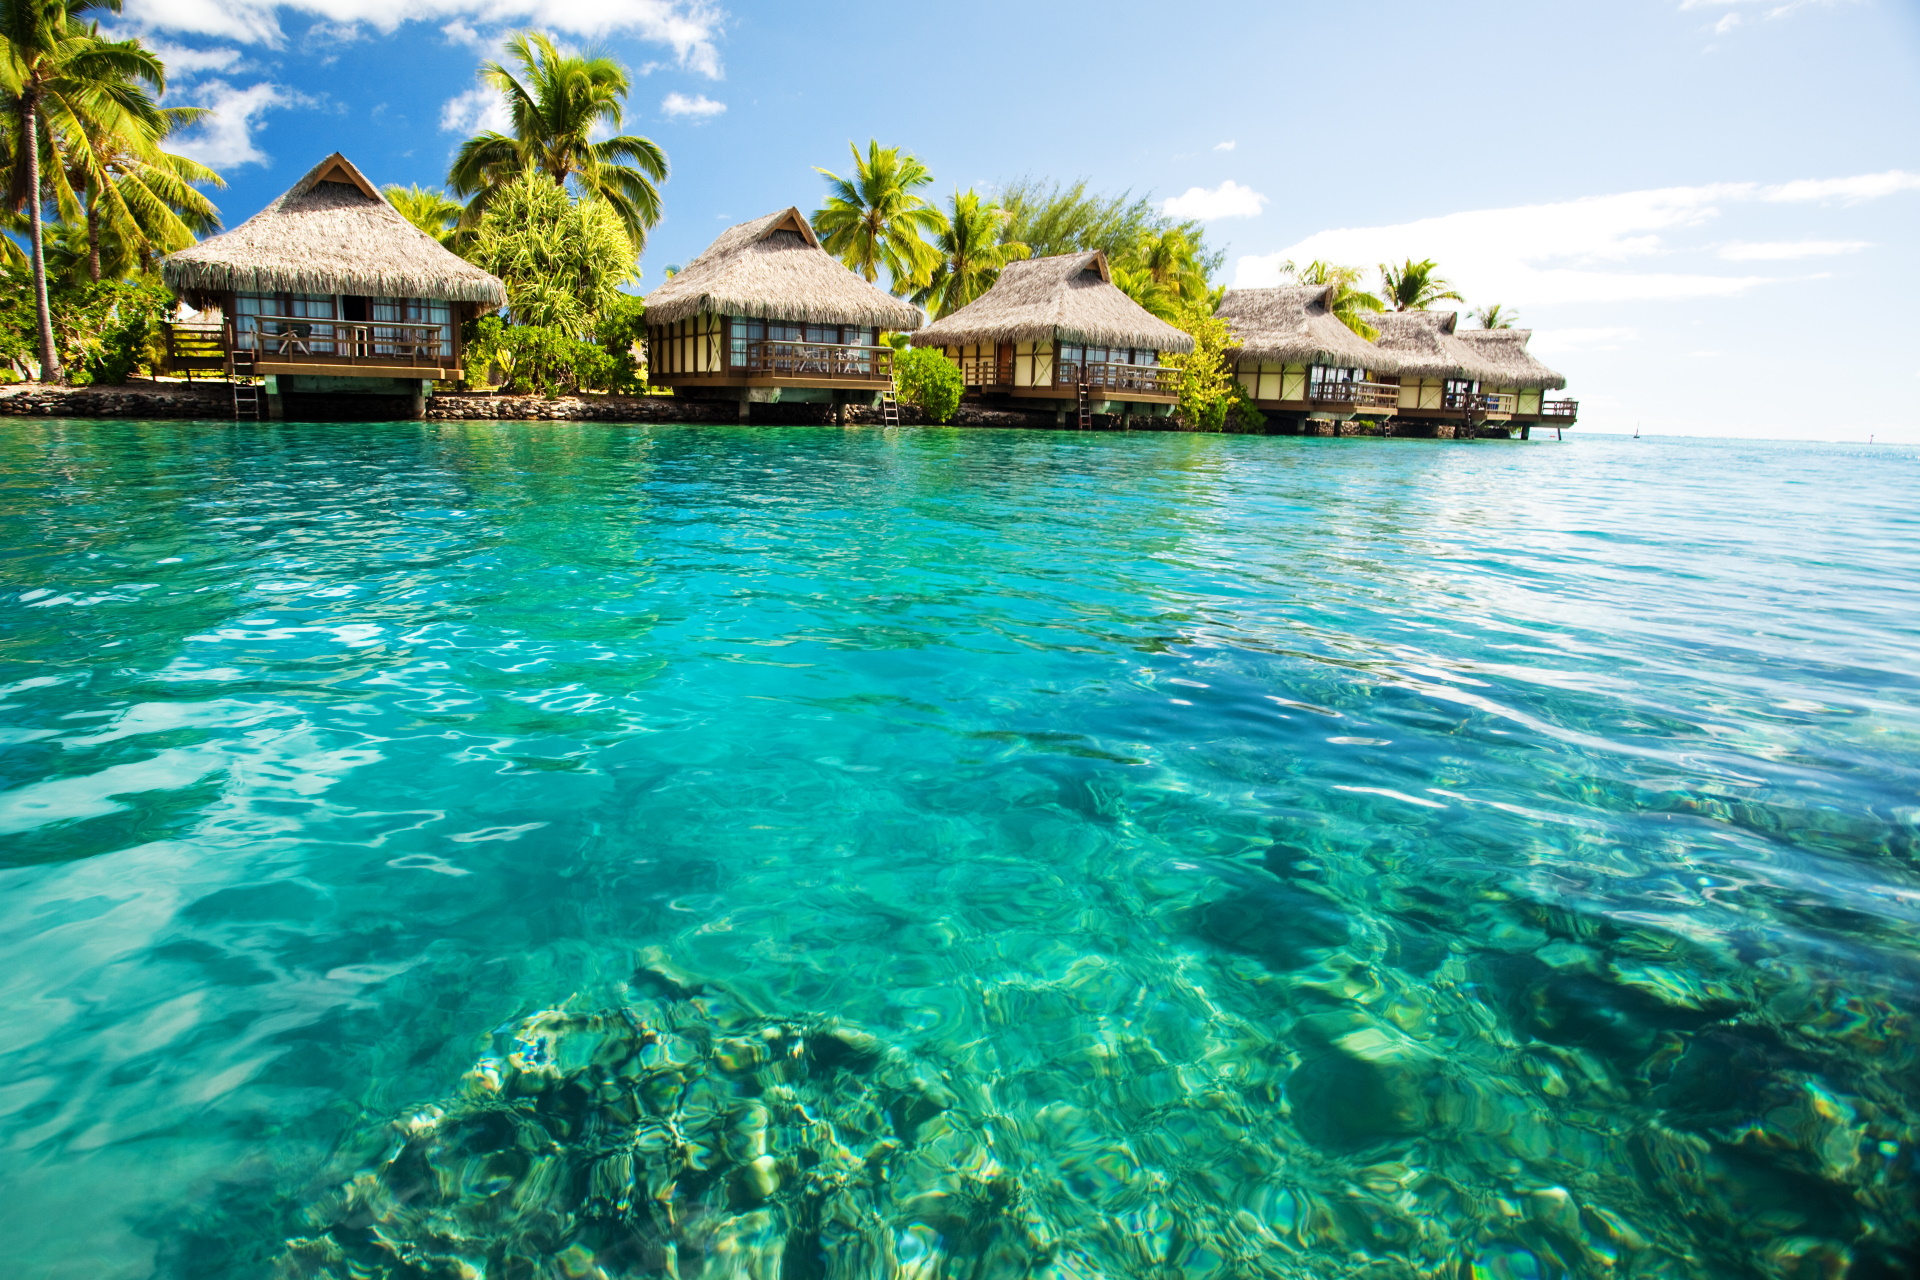 Urlaub auf Malediven  Alles was Sie jetzt wissen sollten